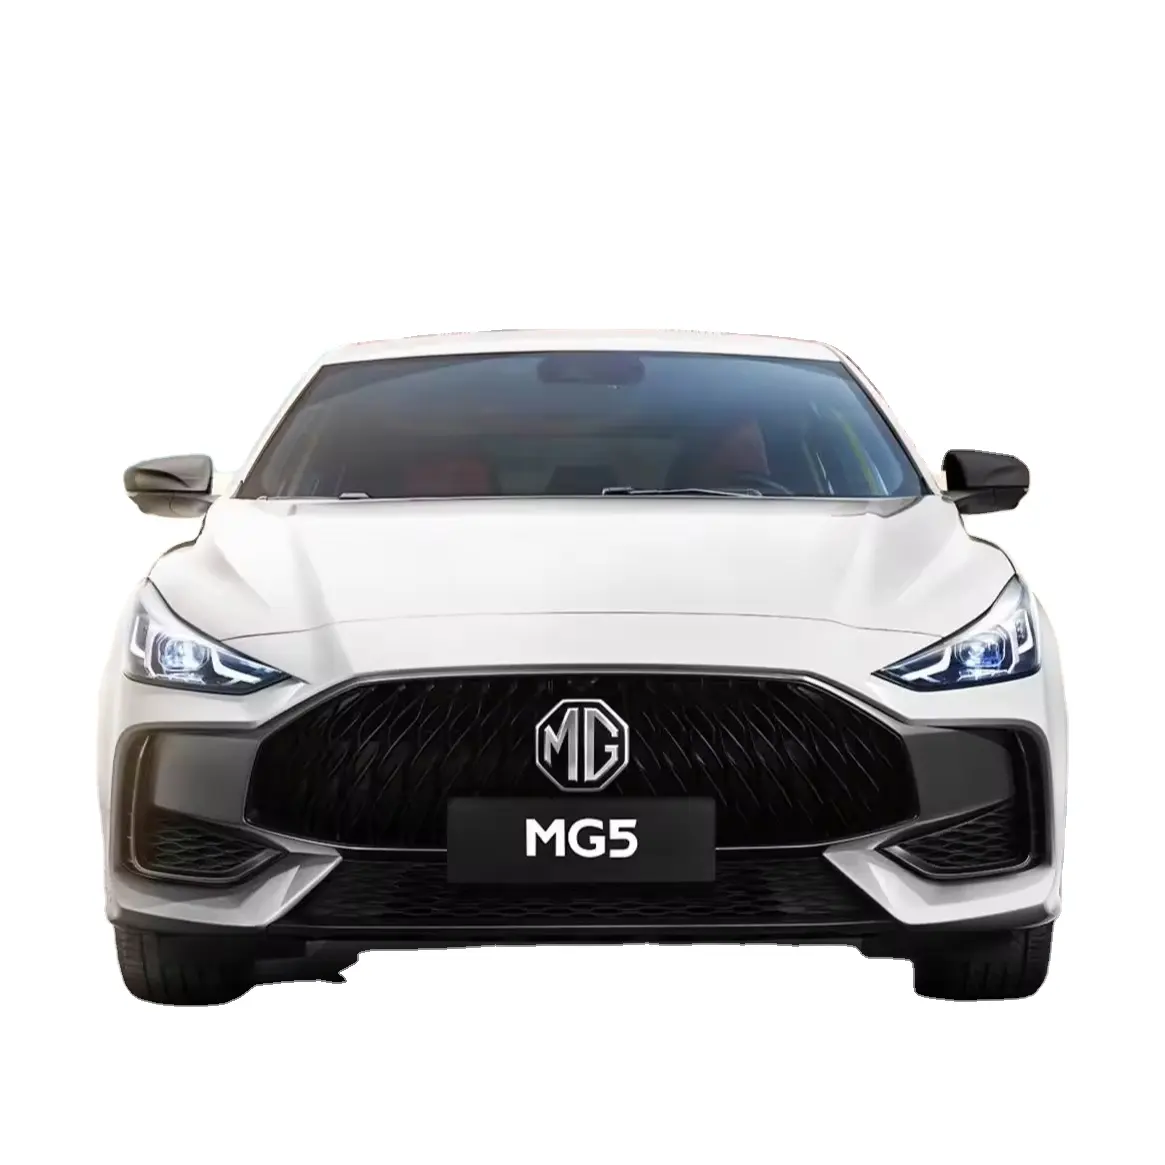 2022 완전 재고 Saic MG 5 소형 스포츠 버전 미니 가솔린 자동차 연료 효율적인 4 륜 구동 자동차